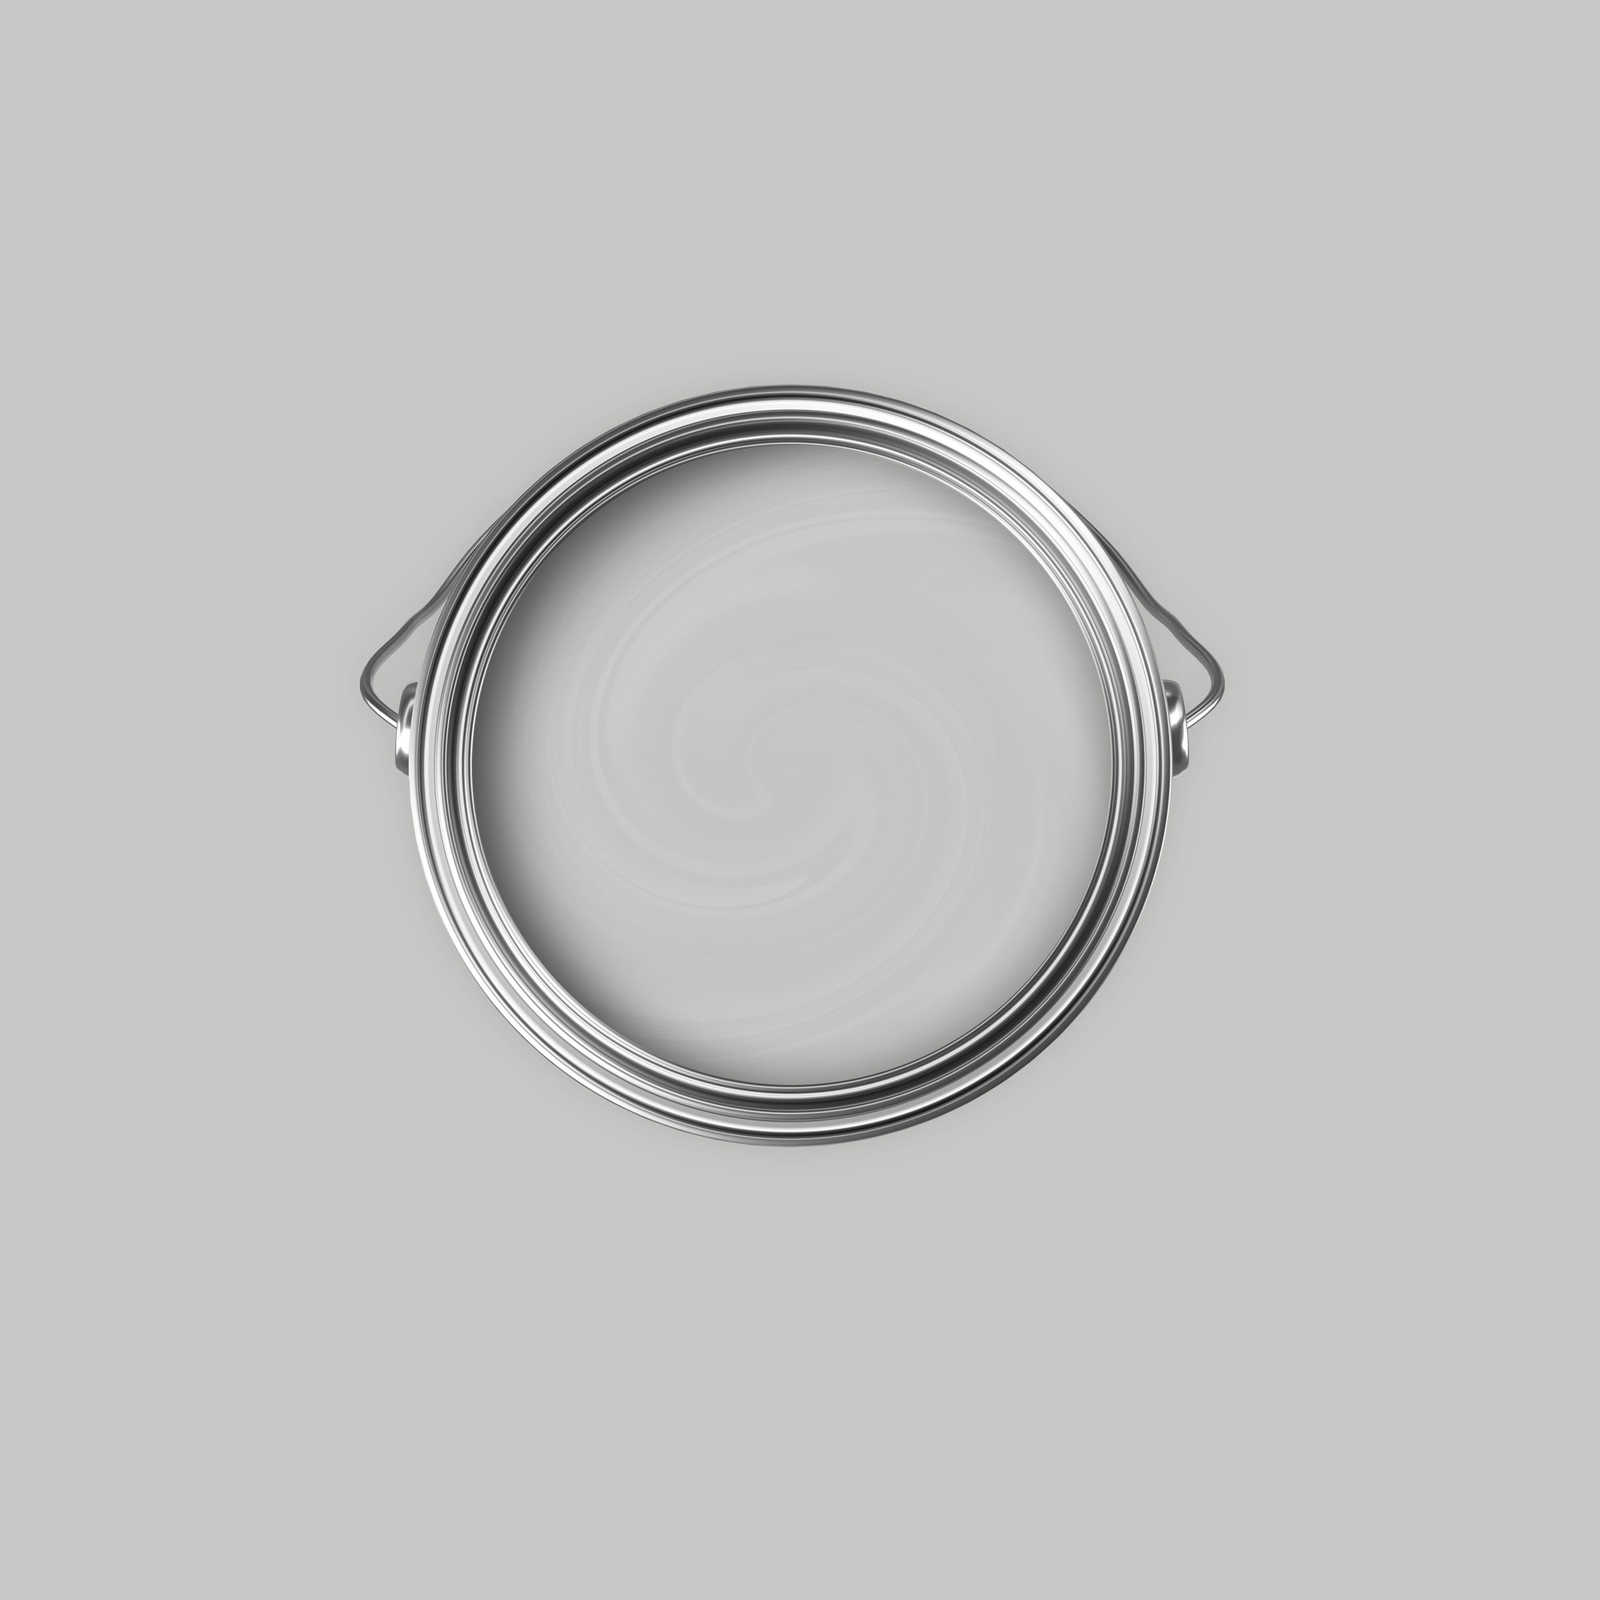             Premium Muurverf huiselijk zilver »Creamy Grey« NW109 – 2,5 liter
        